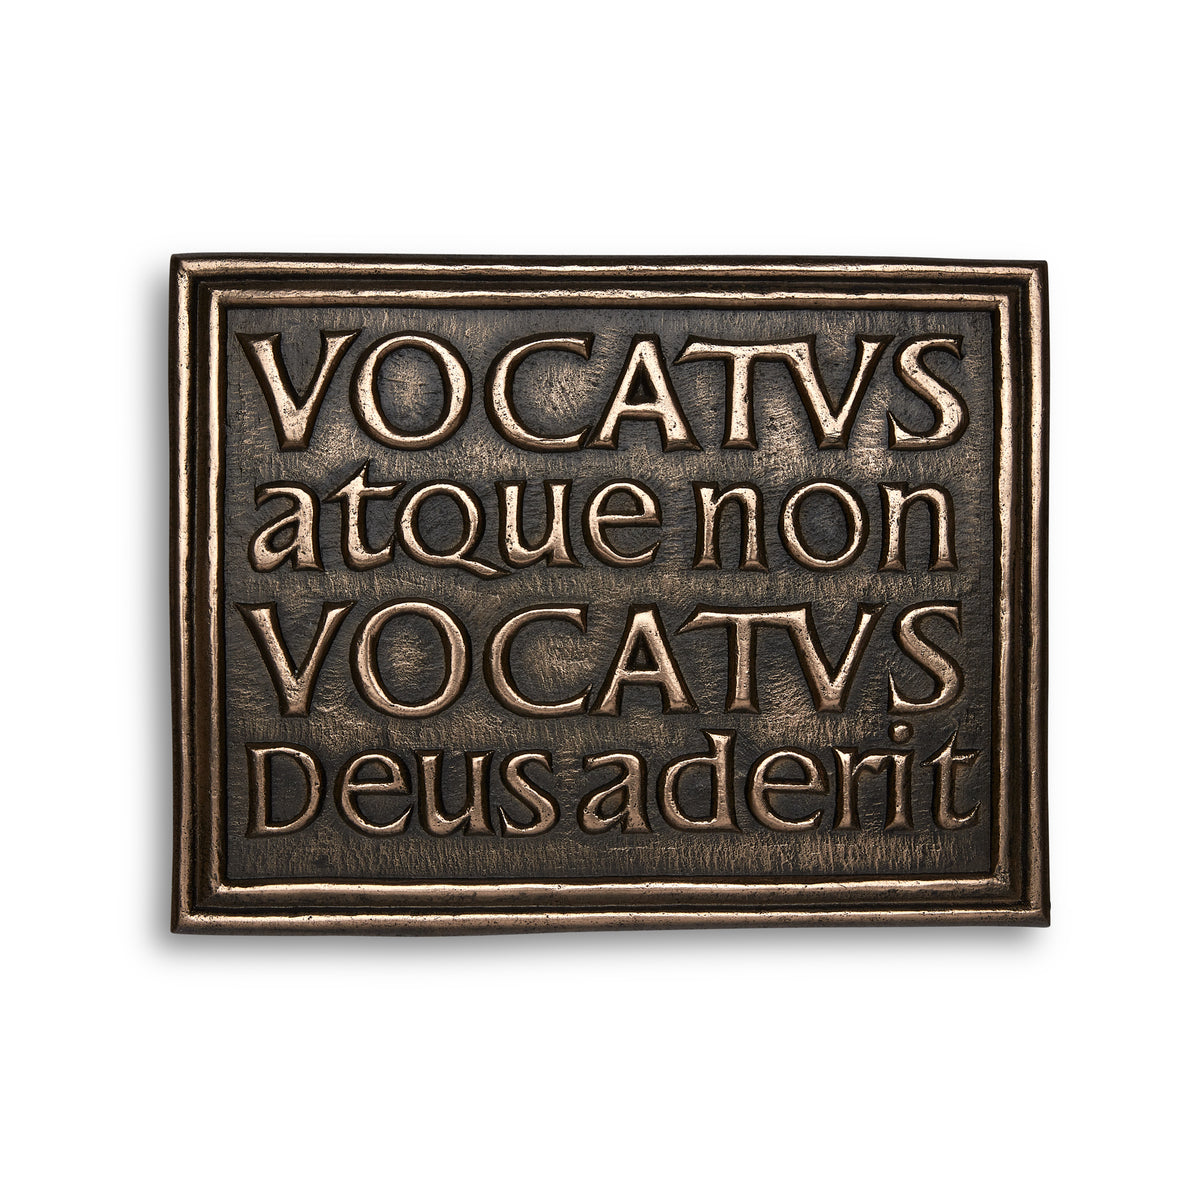 Vocatus atque non vocatus, deus aderit